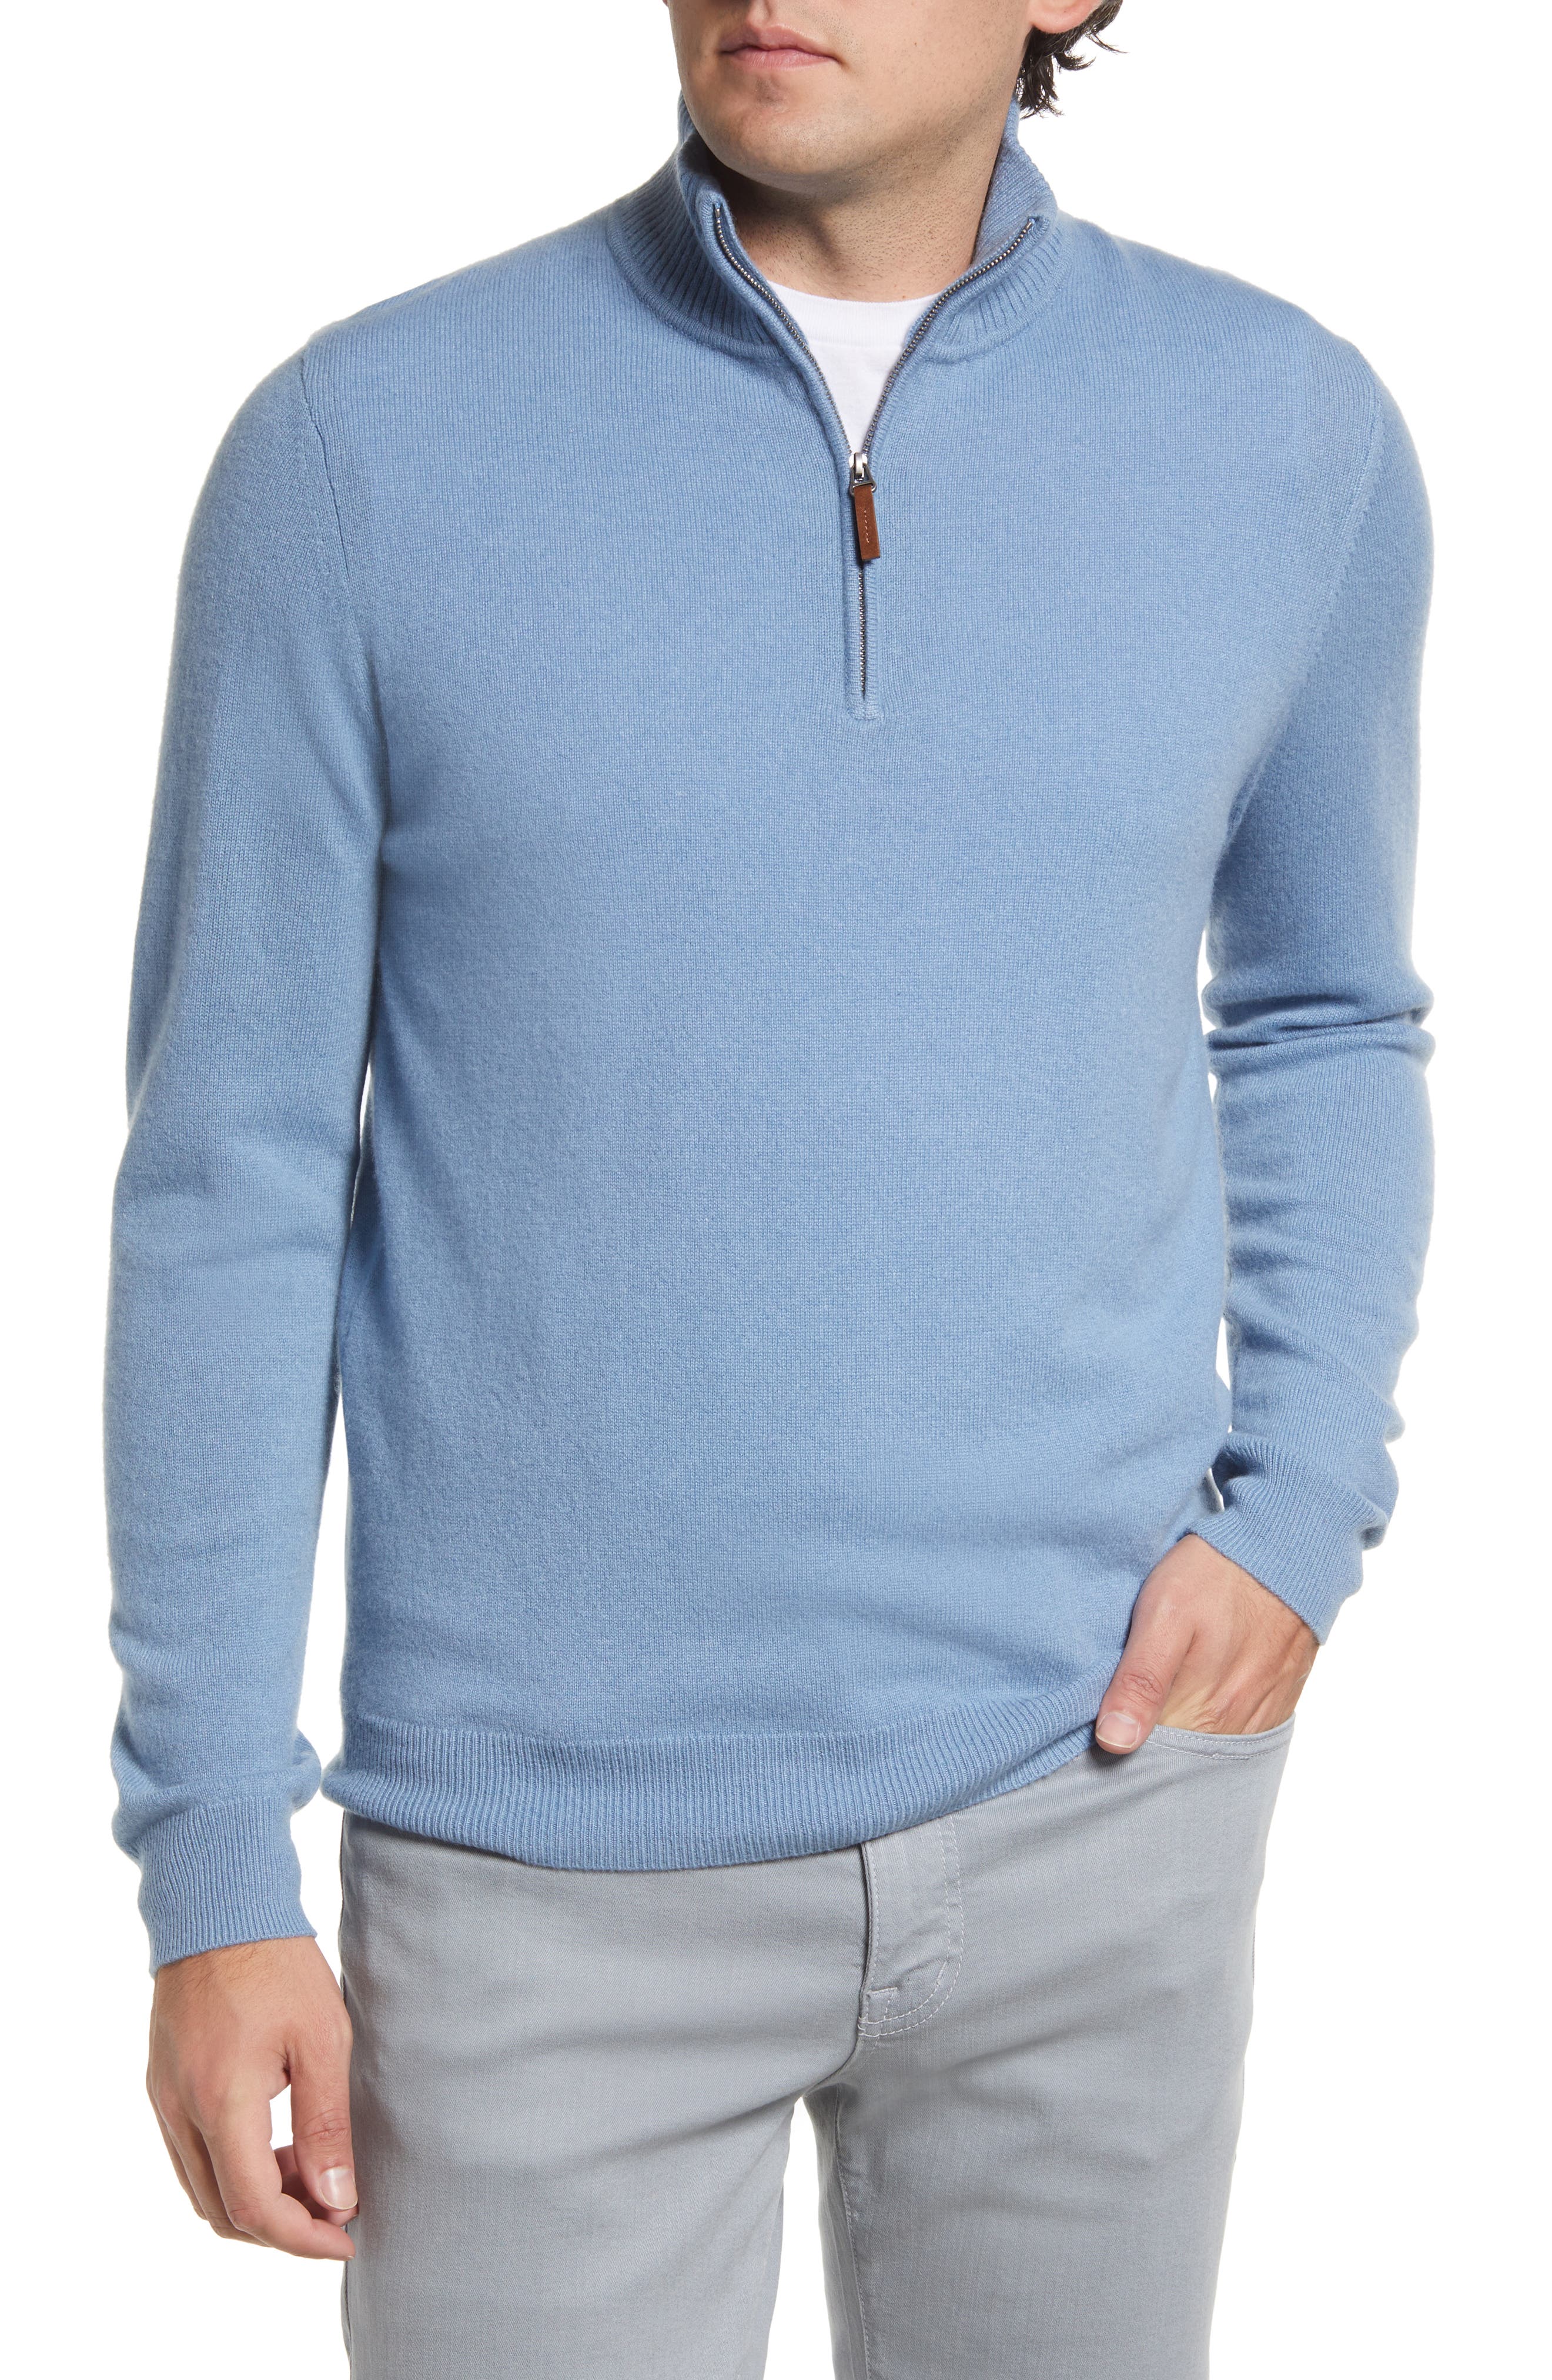 discount 64% Ralph Lauren sweatshirt MEN FASHION Jumpers & Sweatshirts Zip Gray S 